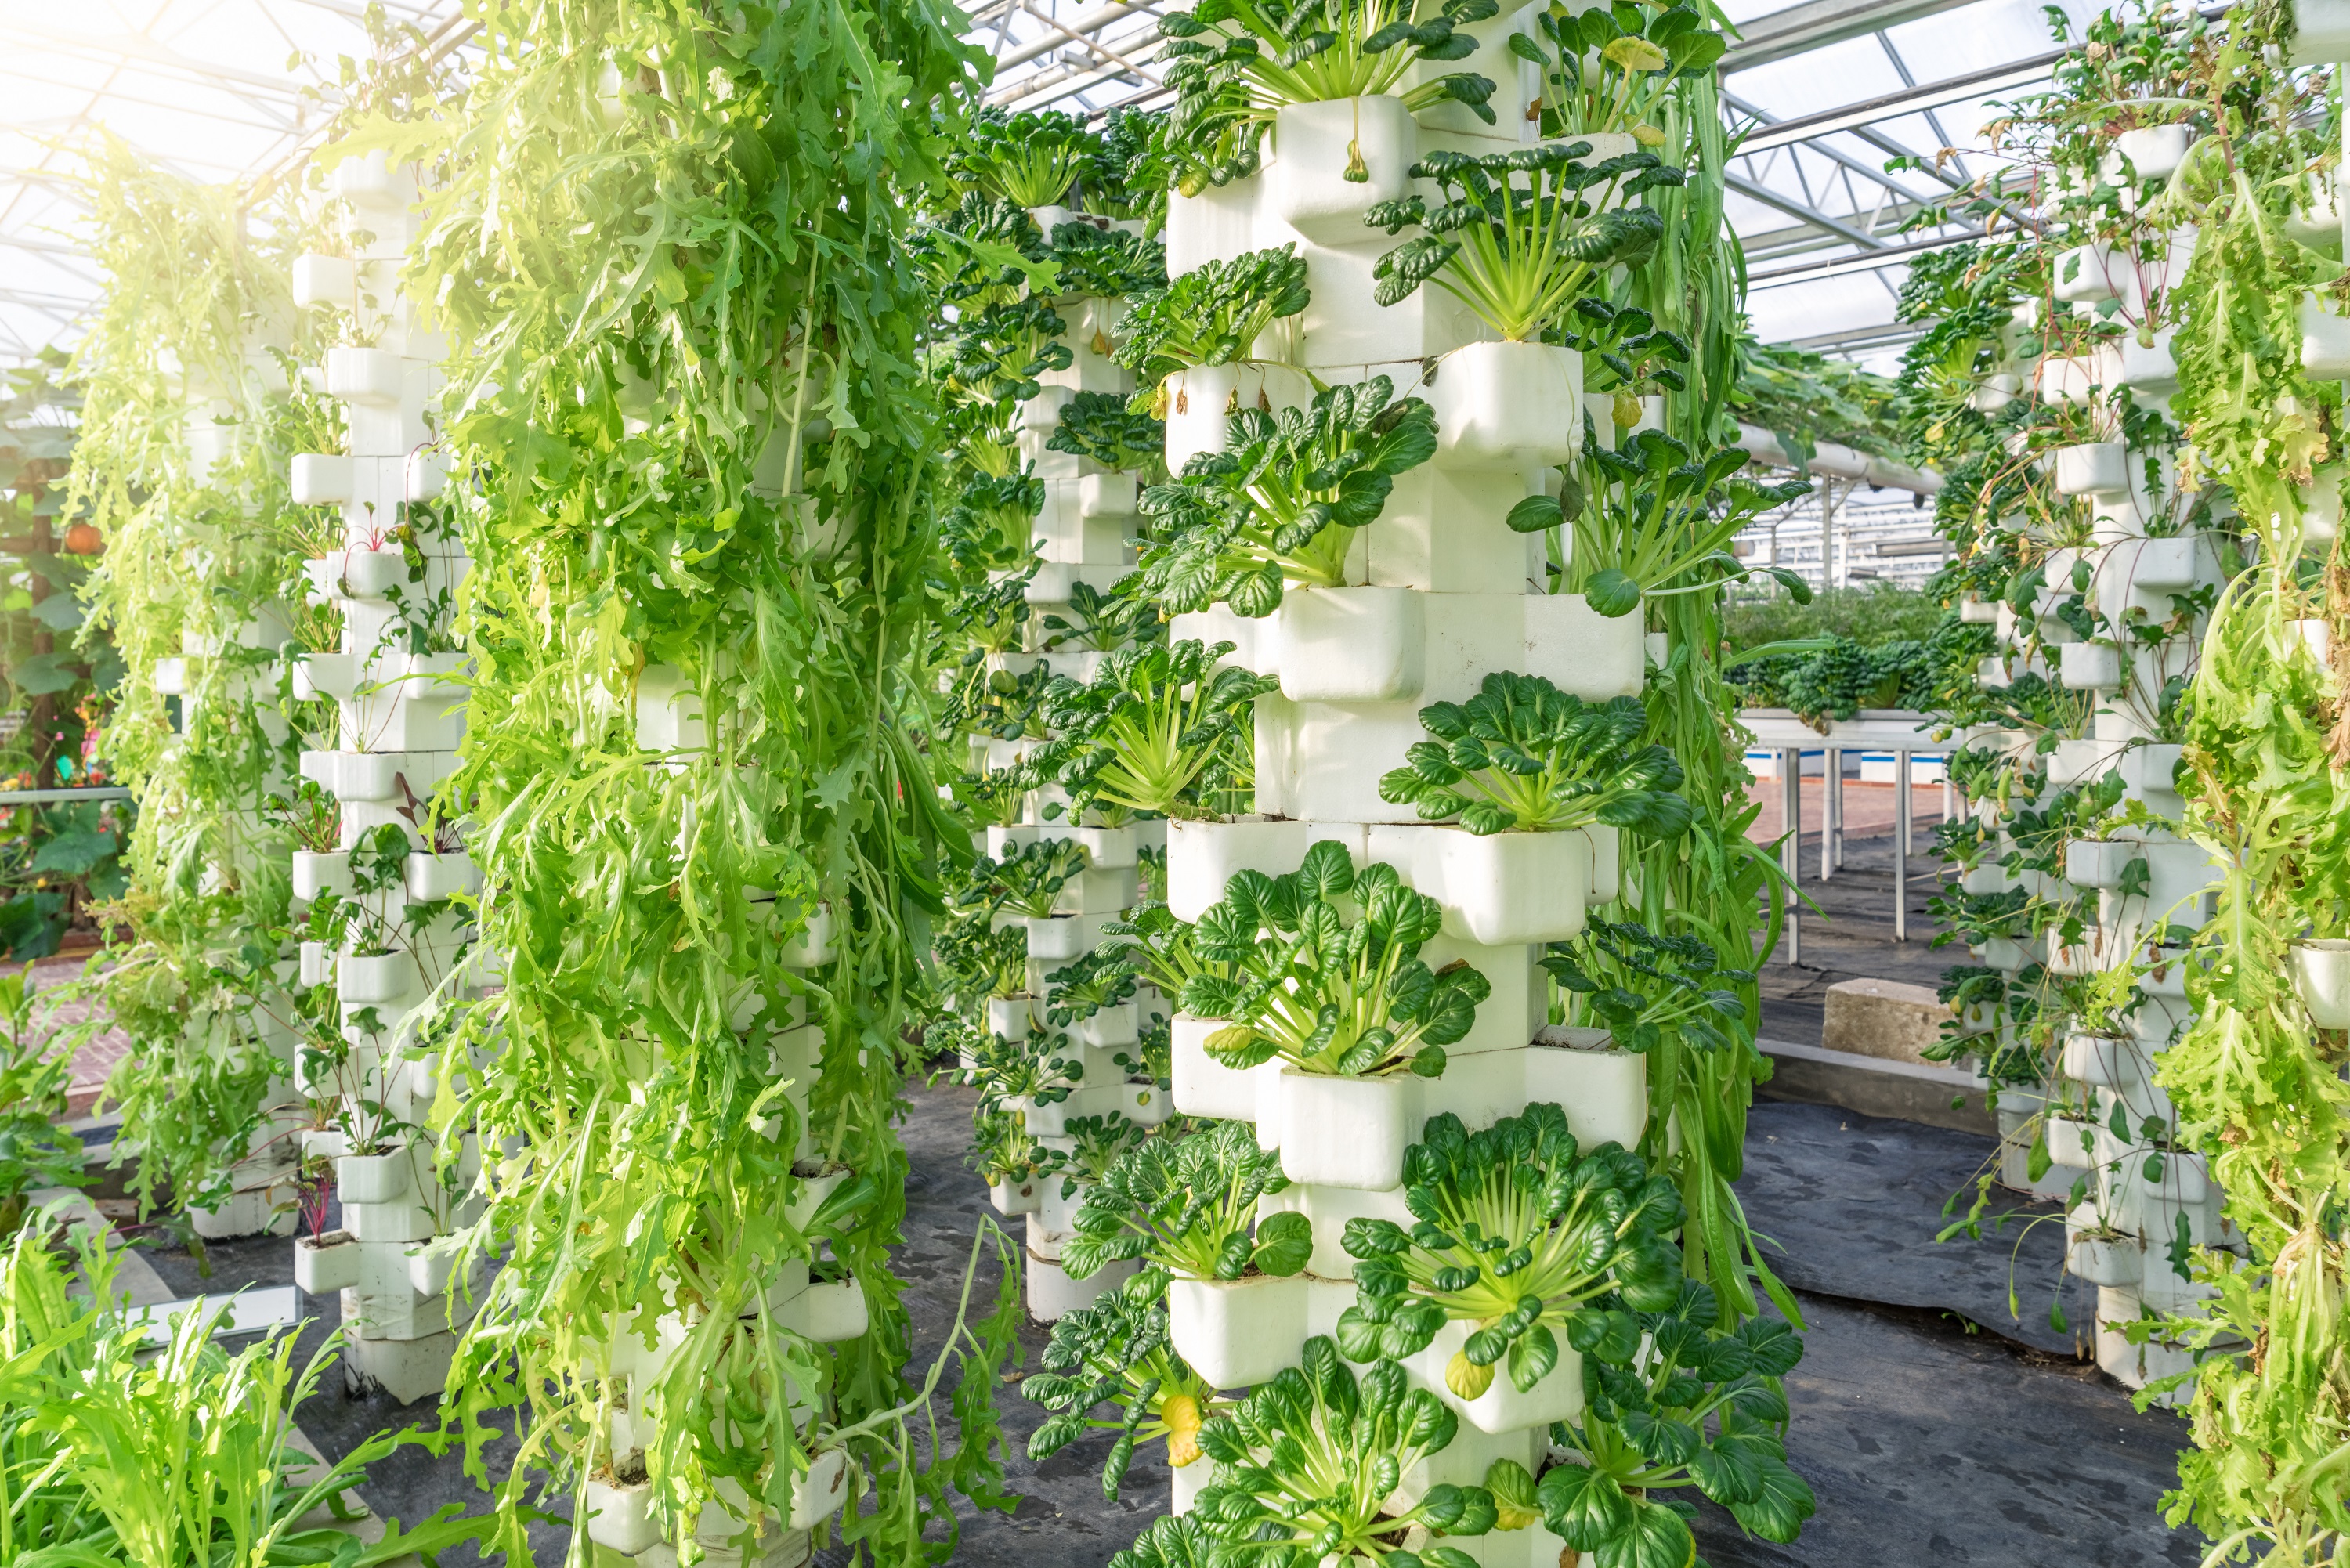 Indoor vertical farming